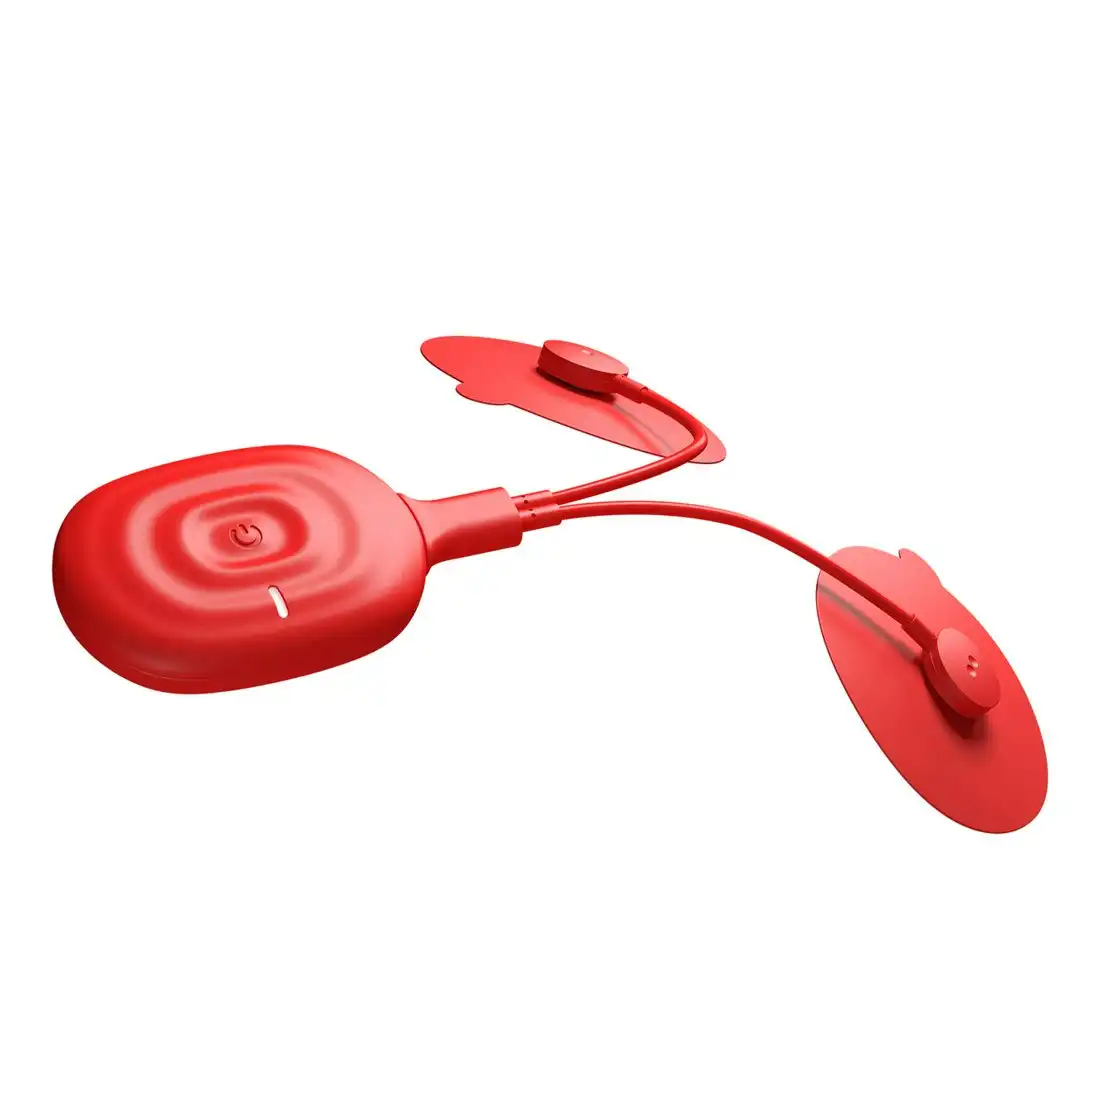 Therabody PowerDot Uno 2.0 Smart Muscle stimulator - Red